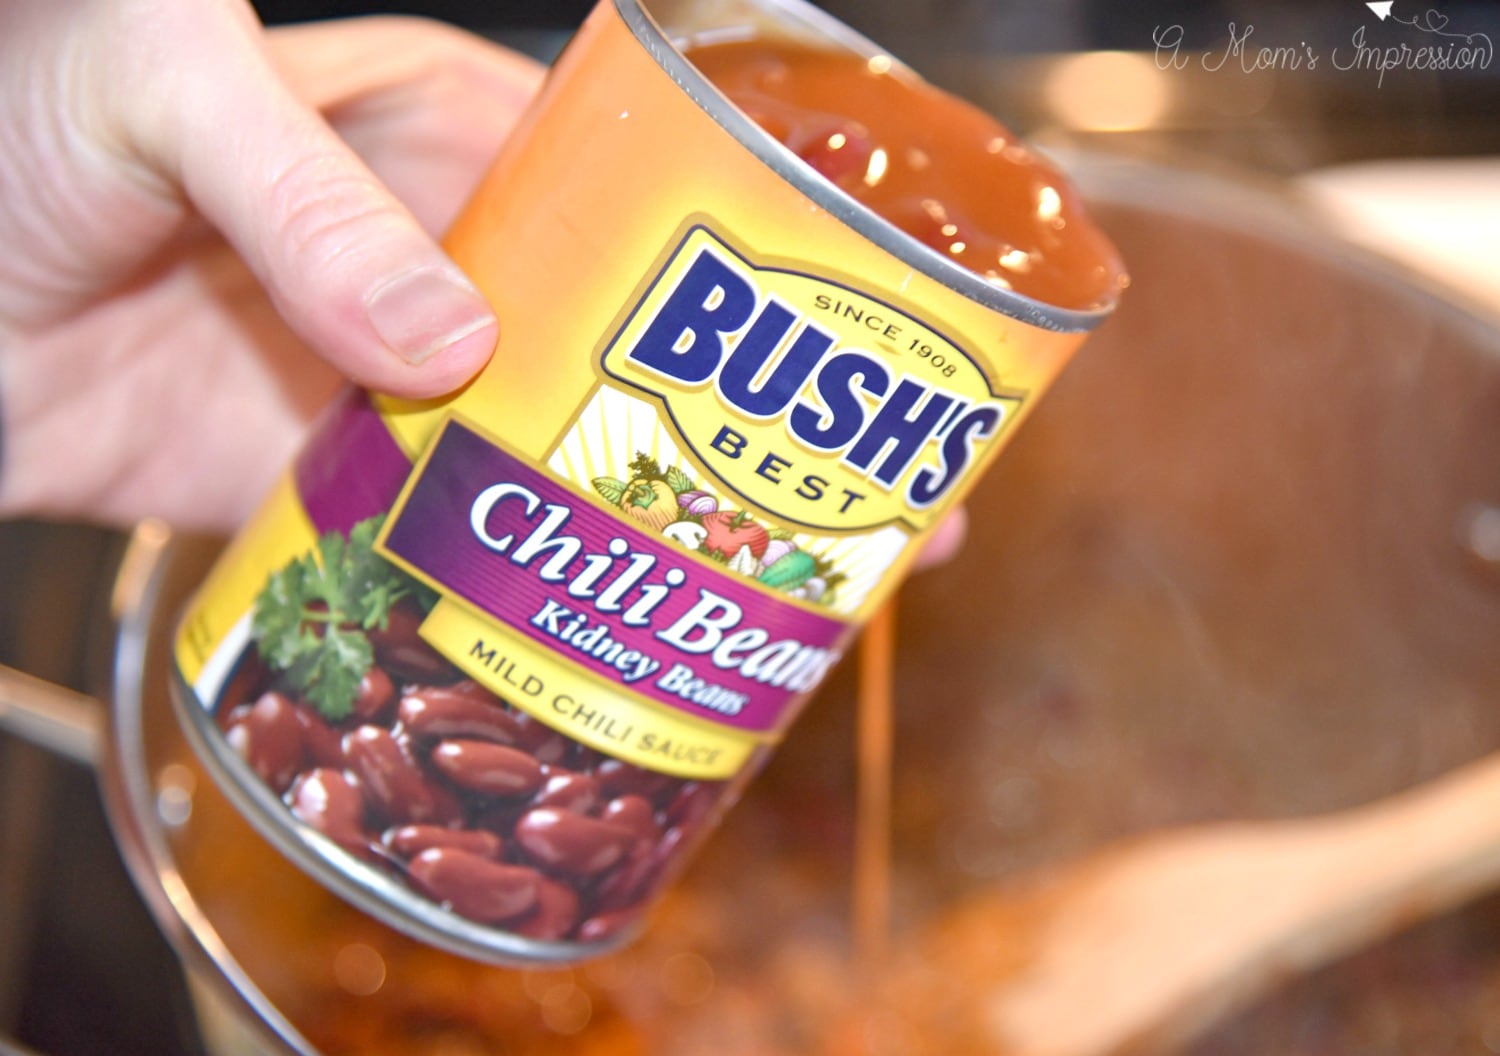 Bush's Chili Beans